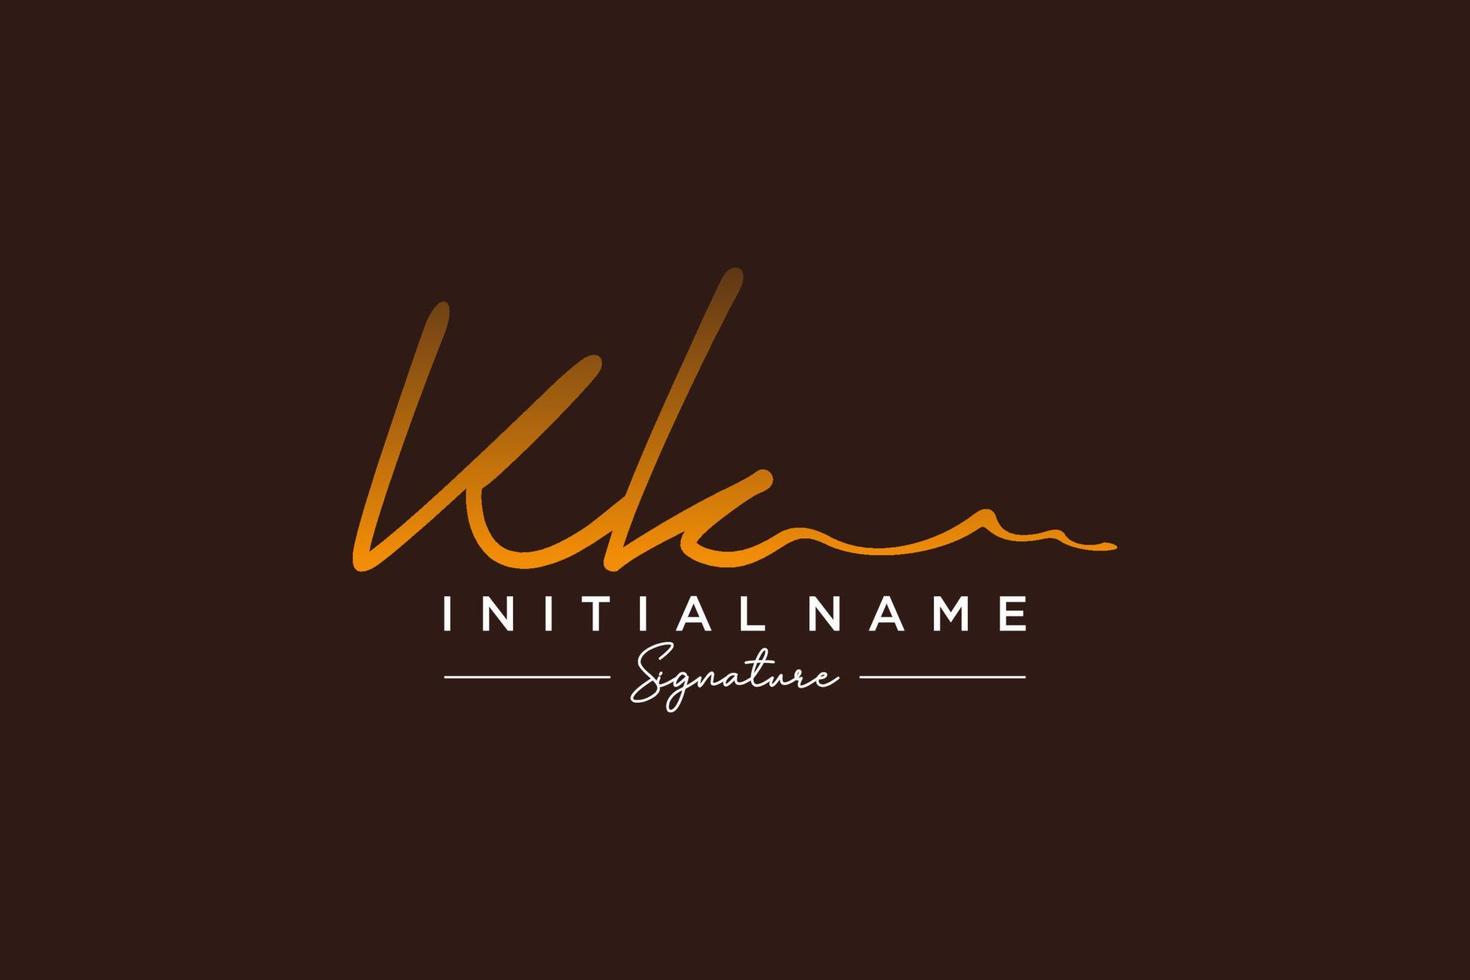 vetor de modelo de logotipo de assinatura inicial kk. ilustração vetorial de letras de caligrafia desenhada à mão.